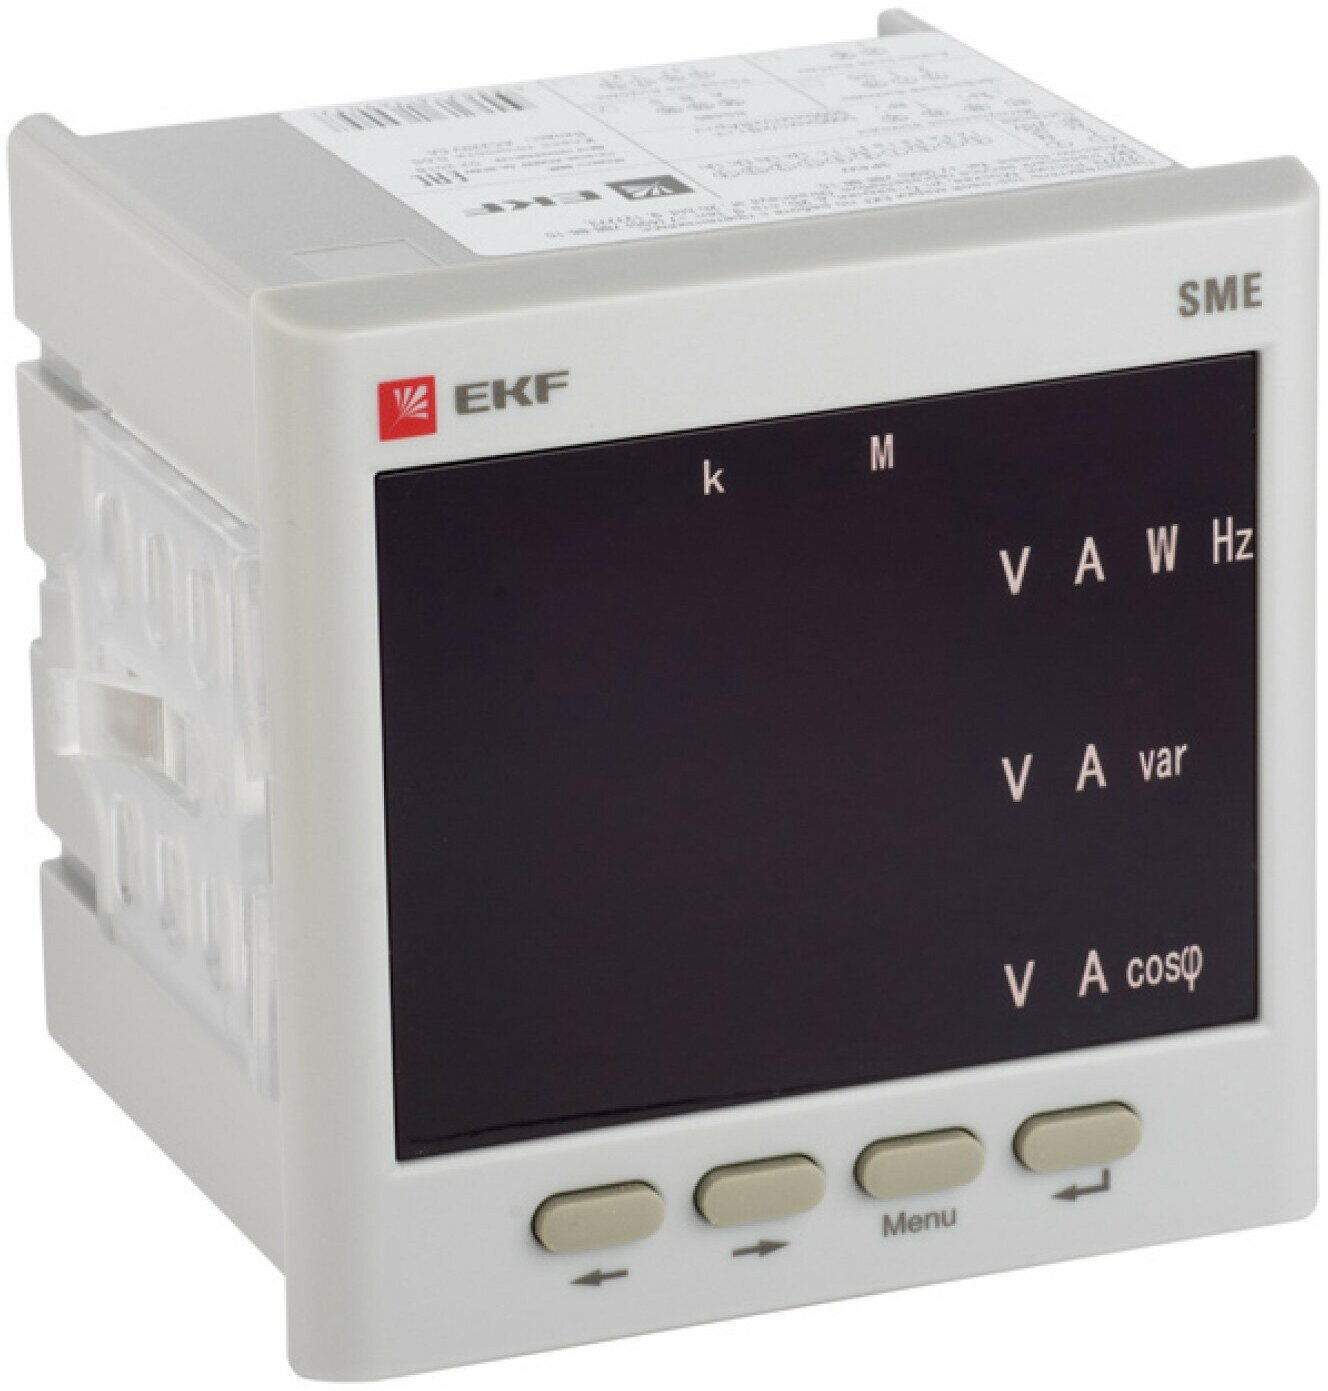 Многофункциональный измерительный прибор SМ-E с светодиодным дисплеем